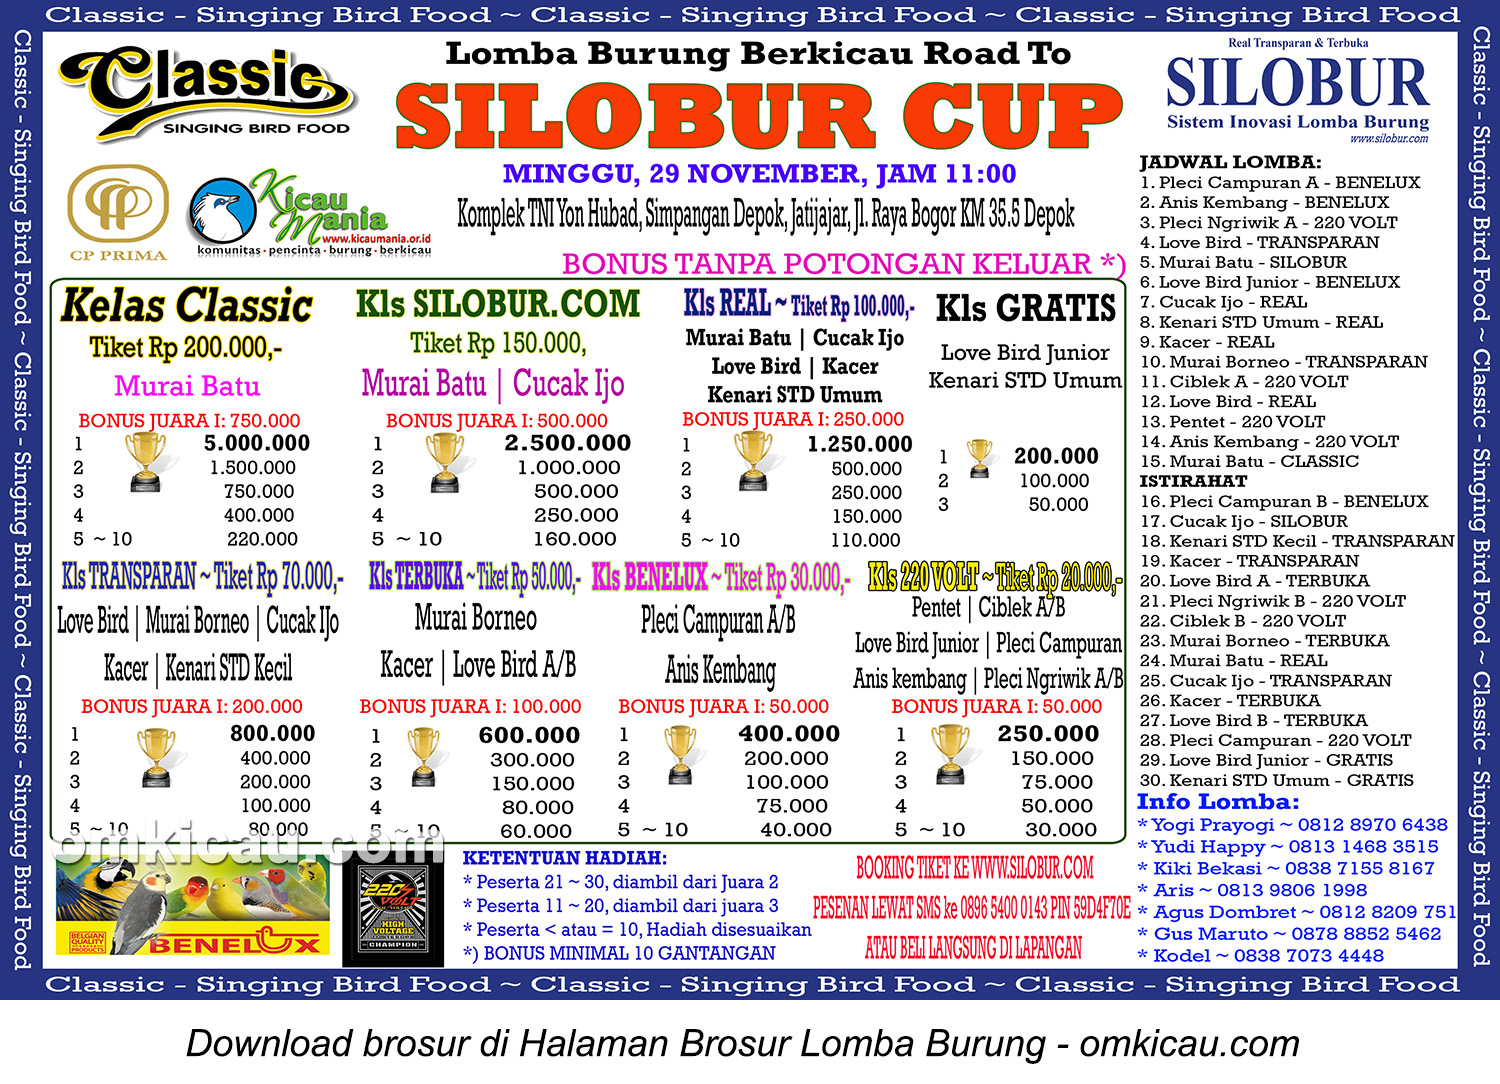 Brosur Lomba Burung Berkicau Road to Silobur Cup, Depok, Minggu 29 November 2015